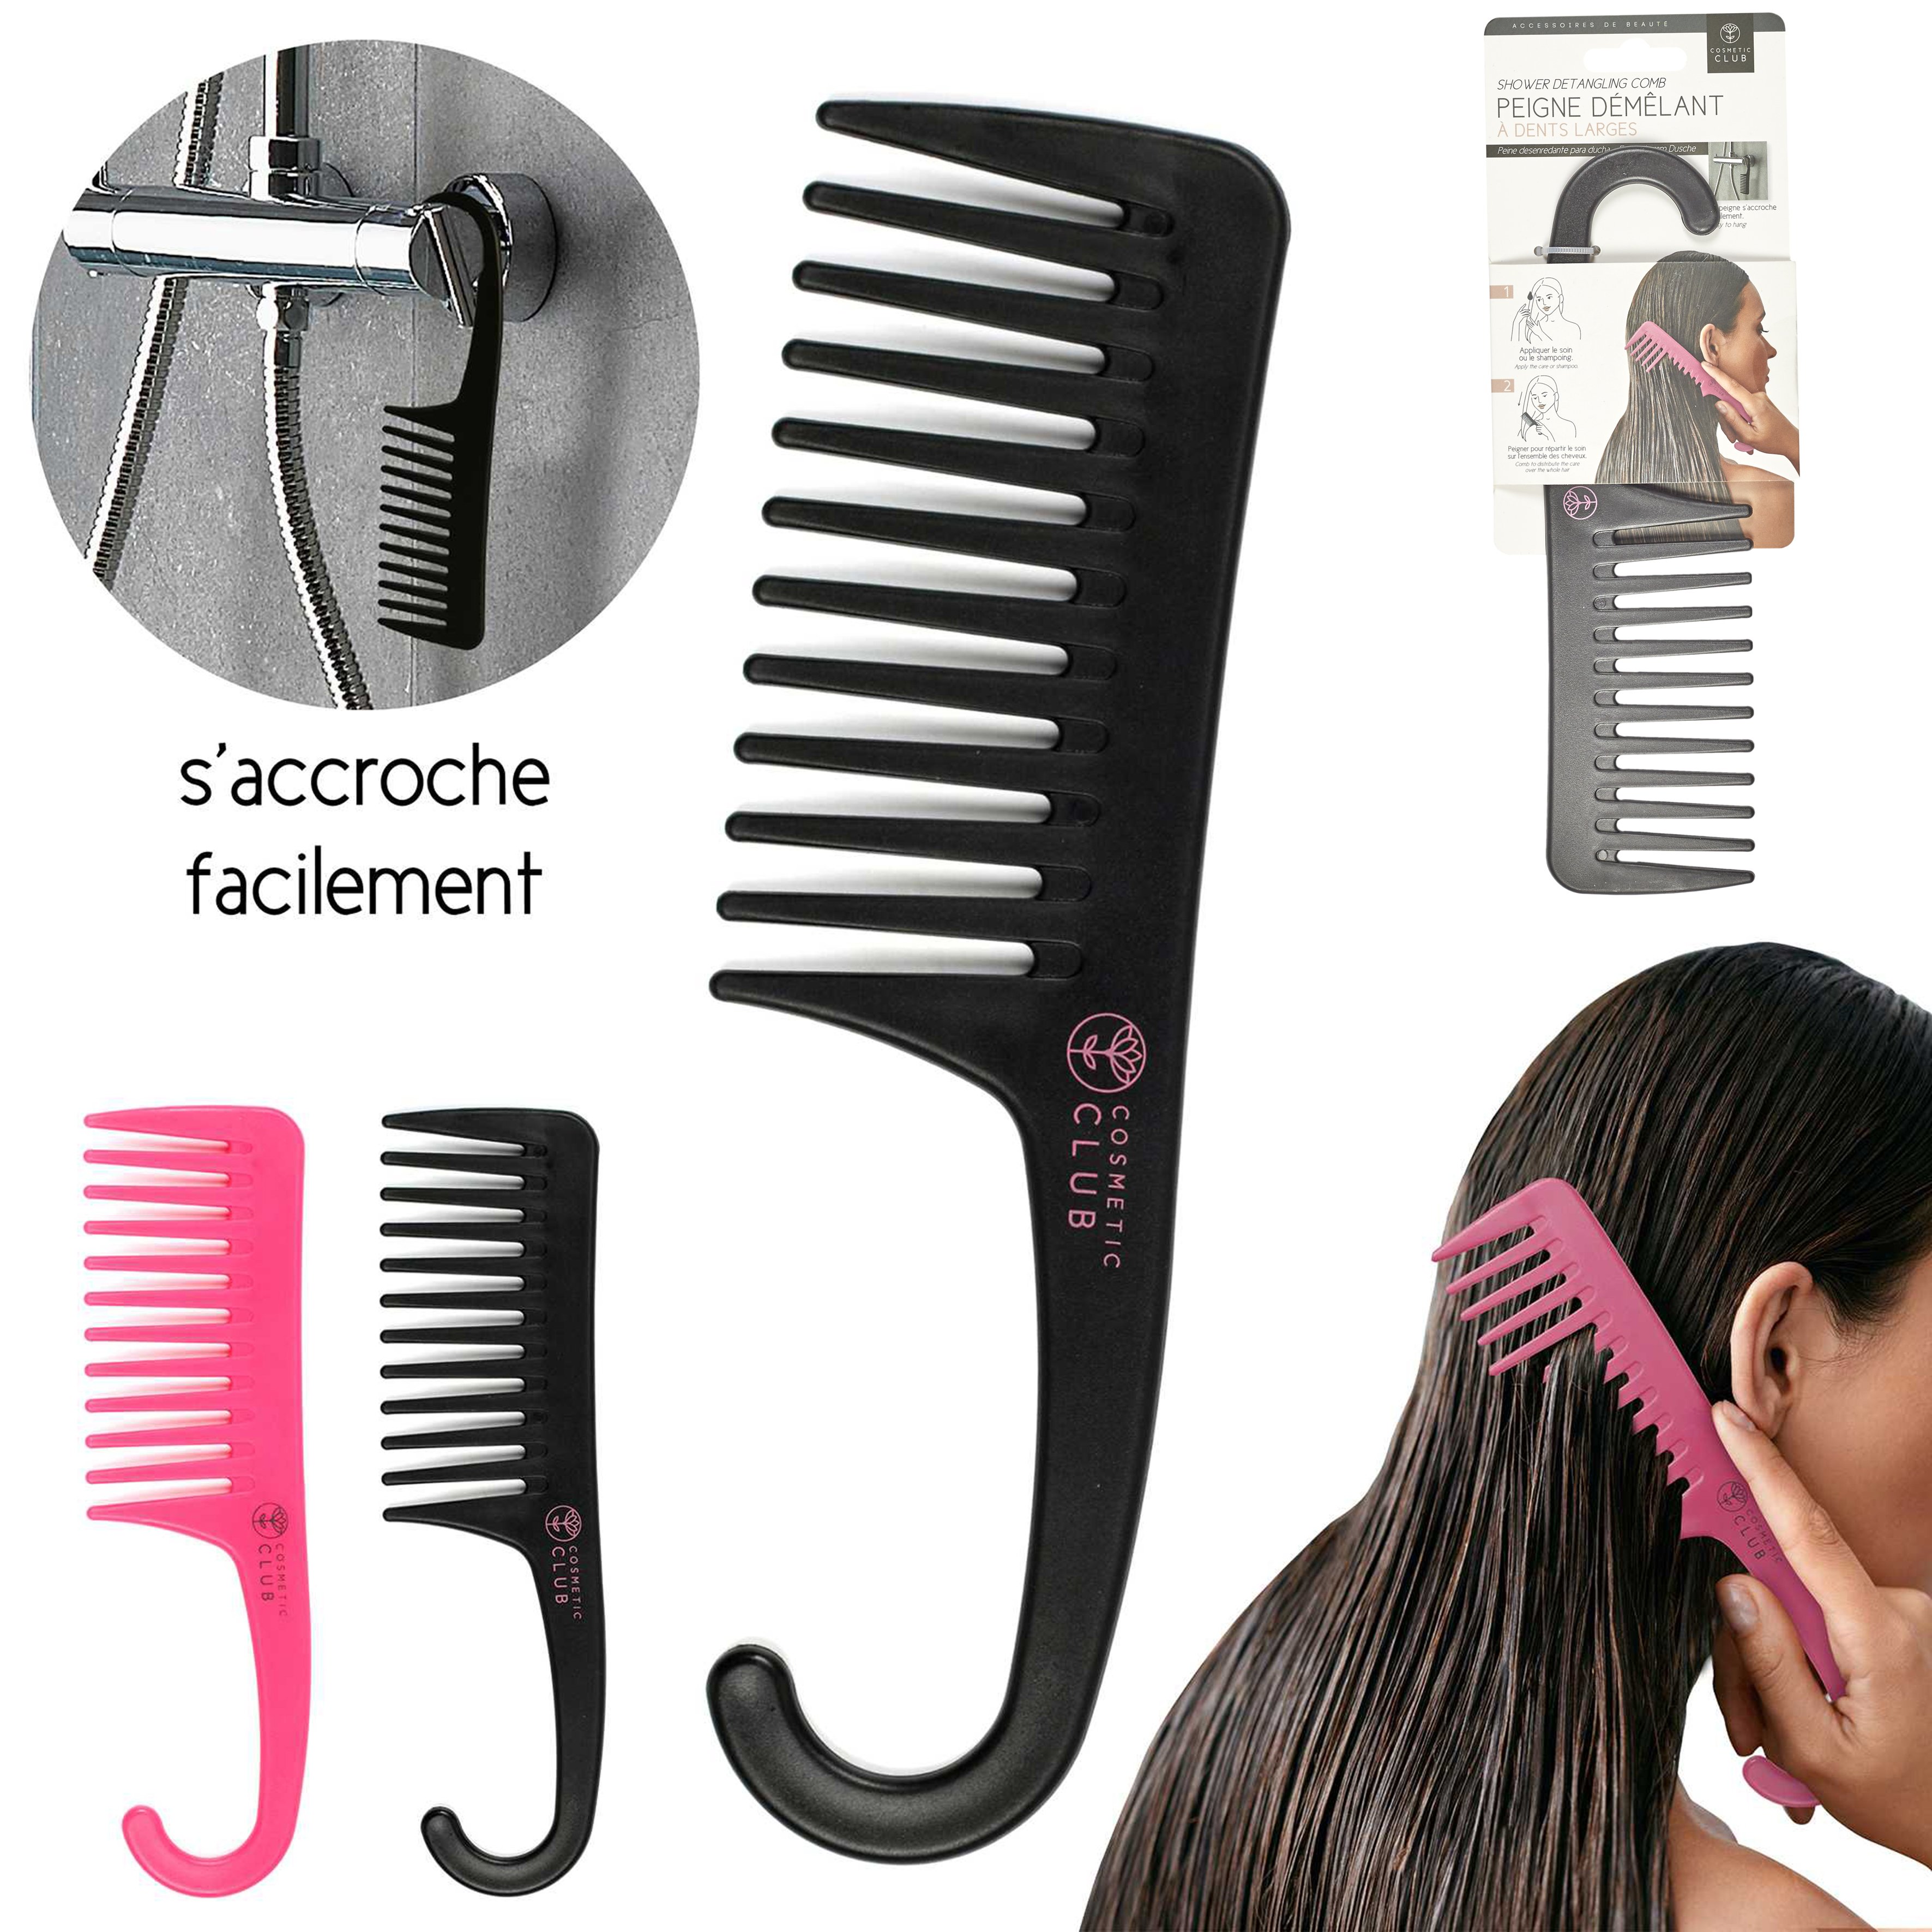 Wholesale Peigne démêlante à grandes dents, en plastique, pour Salon de  coiffure, shampoing, démêlante From m.alibaba.com